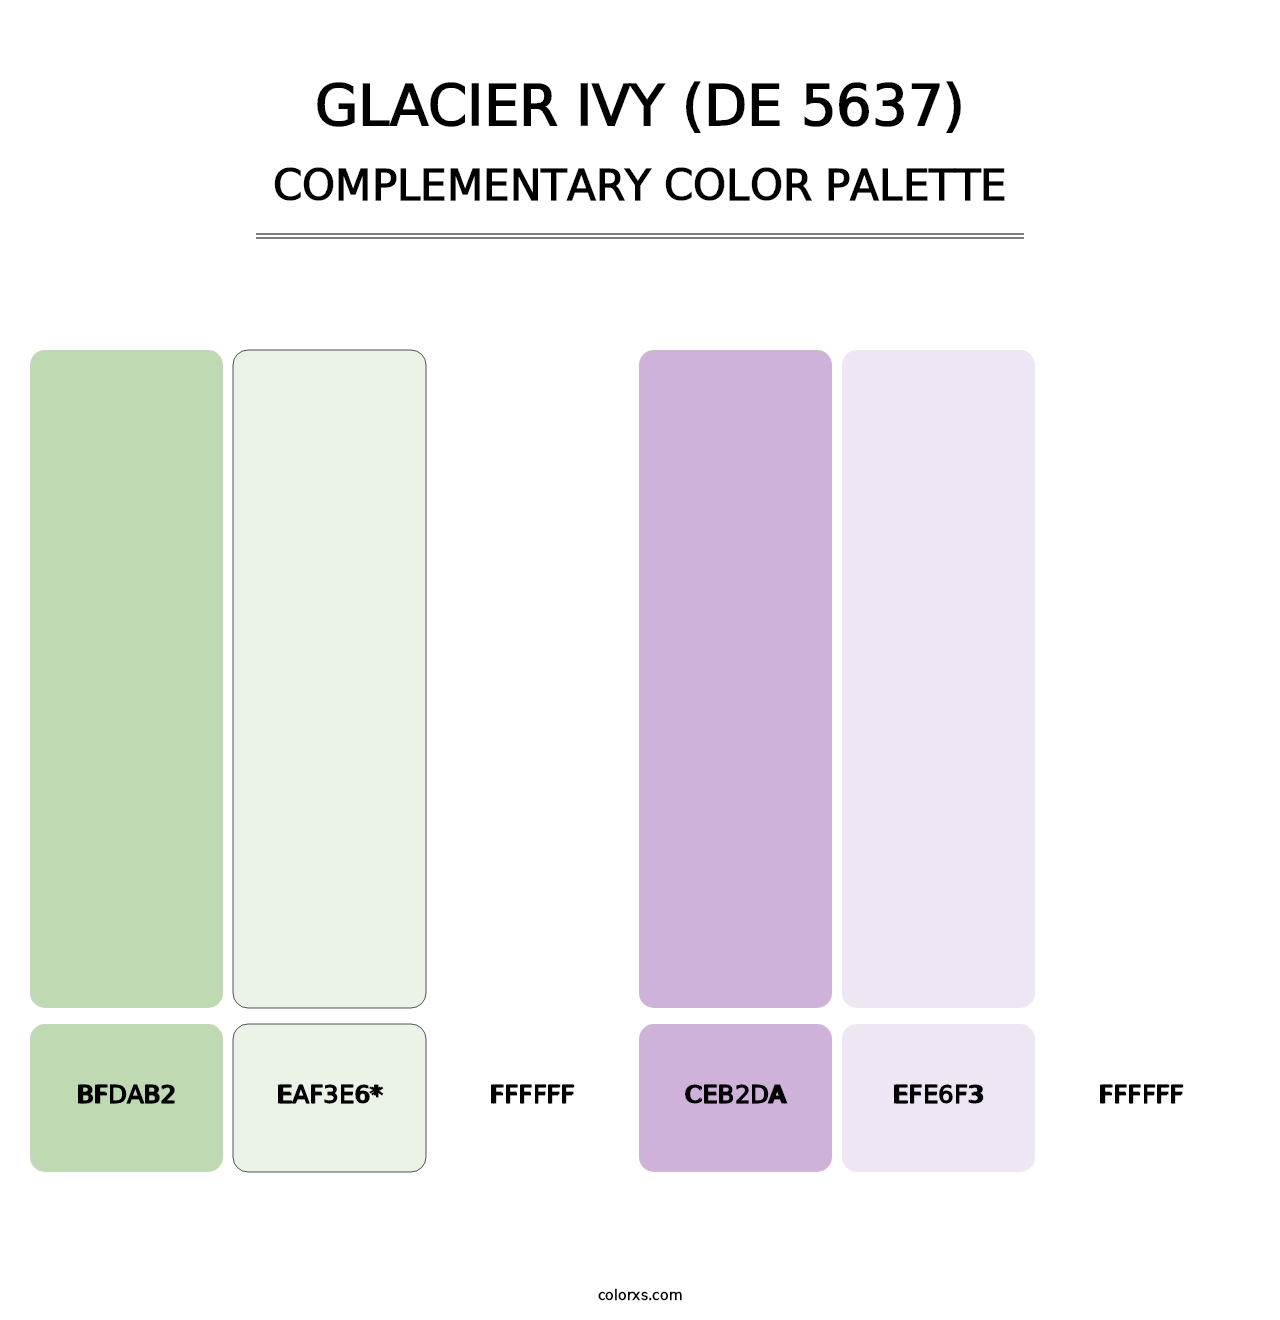 Glacier Ivy (DE 5637) - Complementary Color Palette